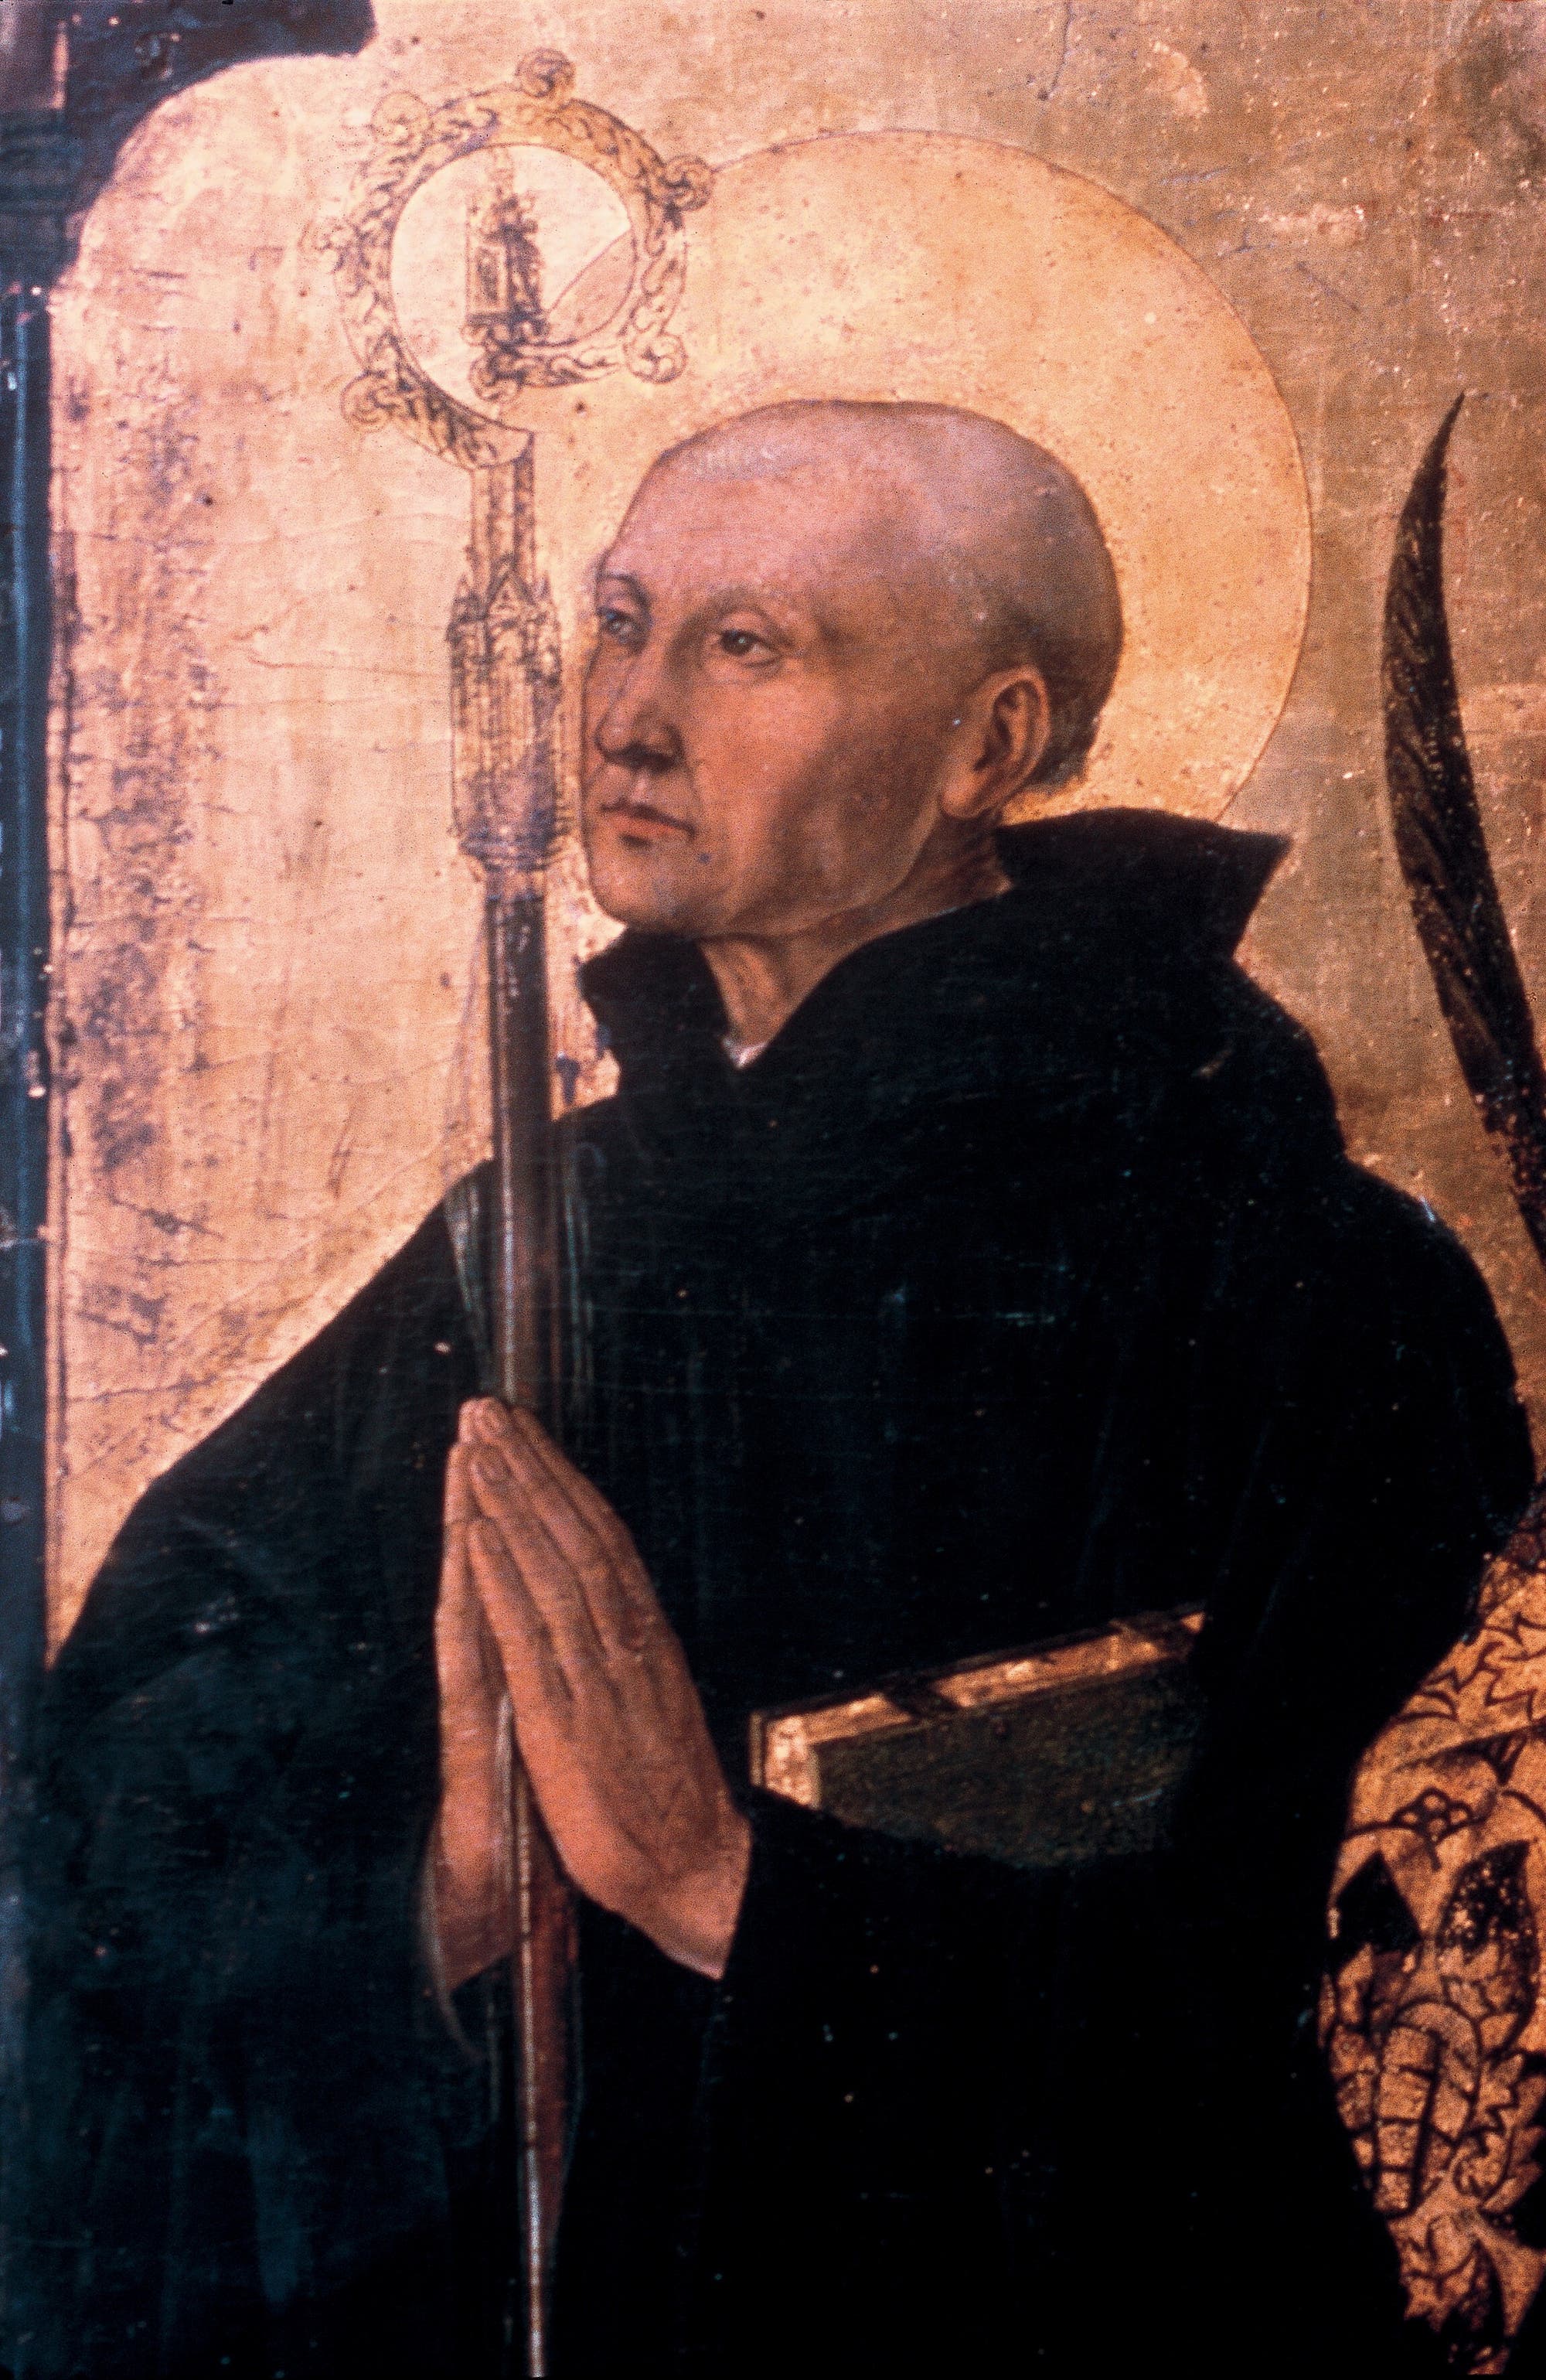 Das Altarbild, das sich heute im Museo di Capodimonte in Neapel befindet, zeigt den heiligen Severin. 